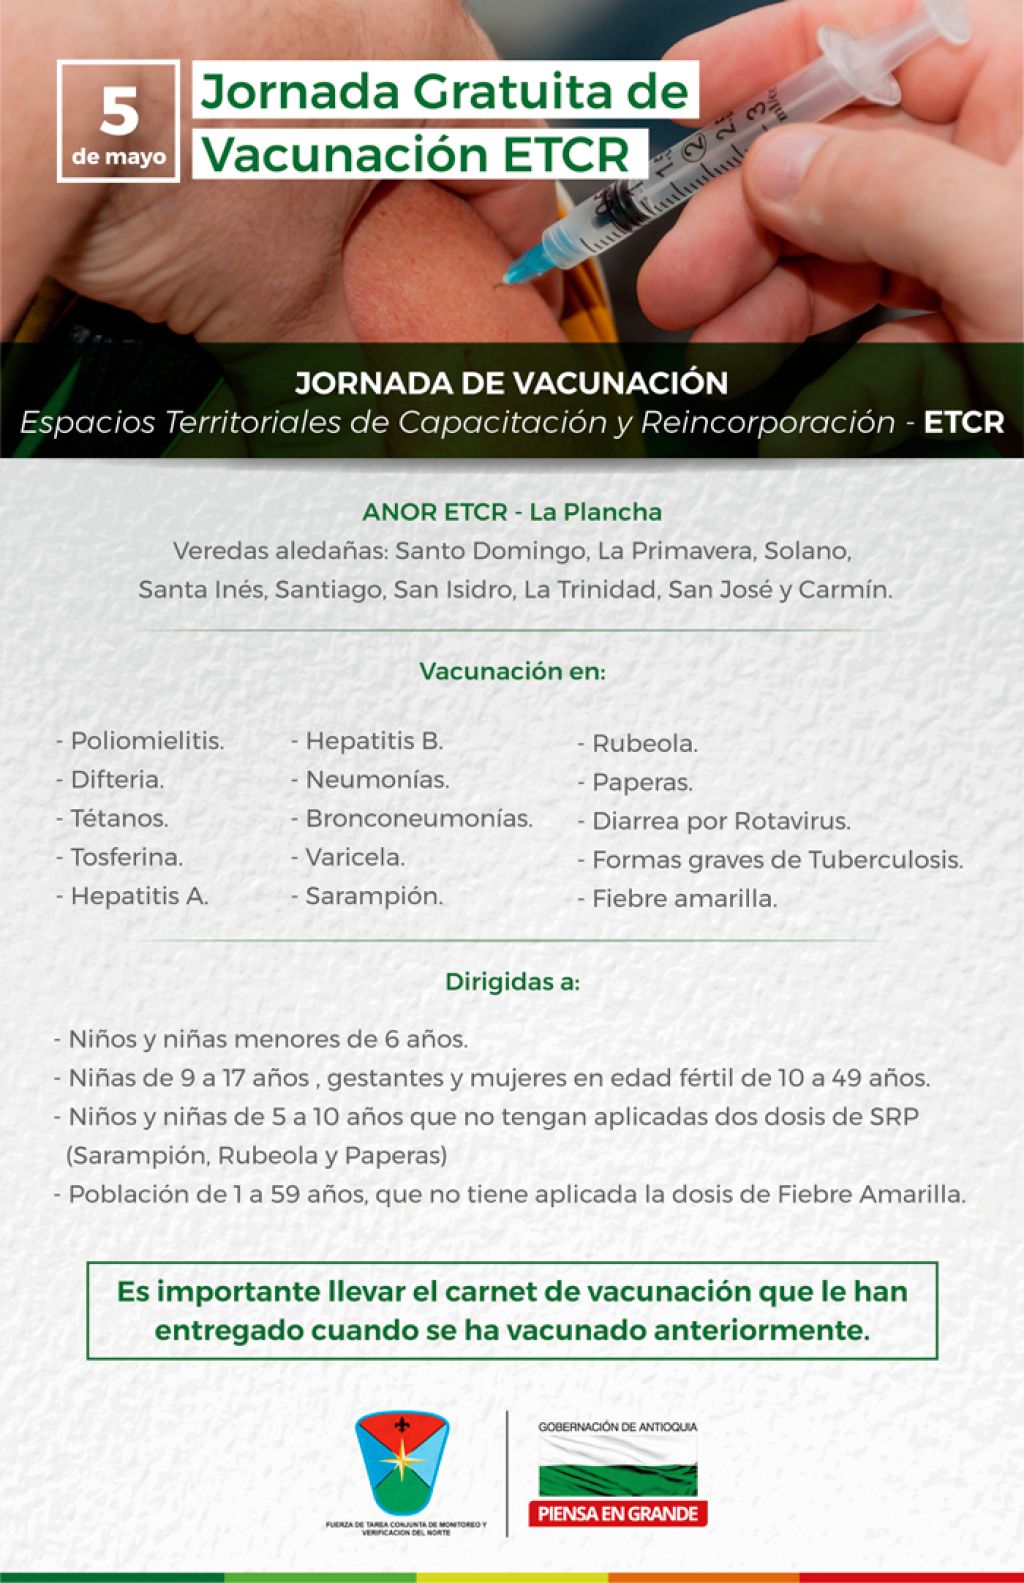 Antioquia prepara una jornada de vacunación en los Espacios Territoriales de Capacitación y Reincorporación - ETCR